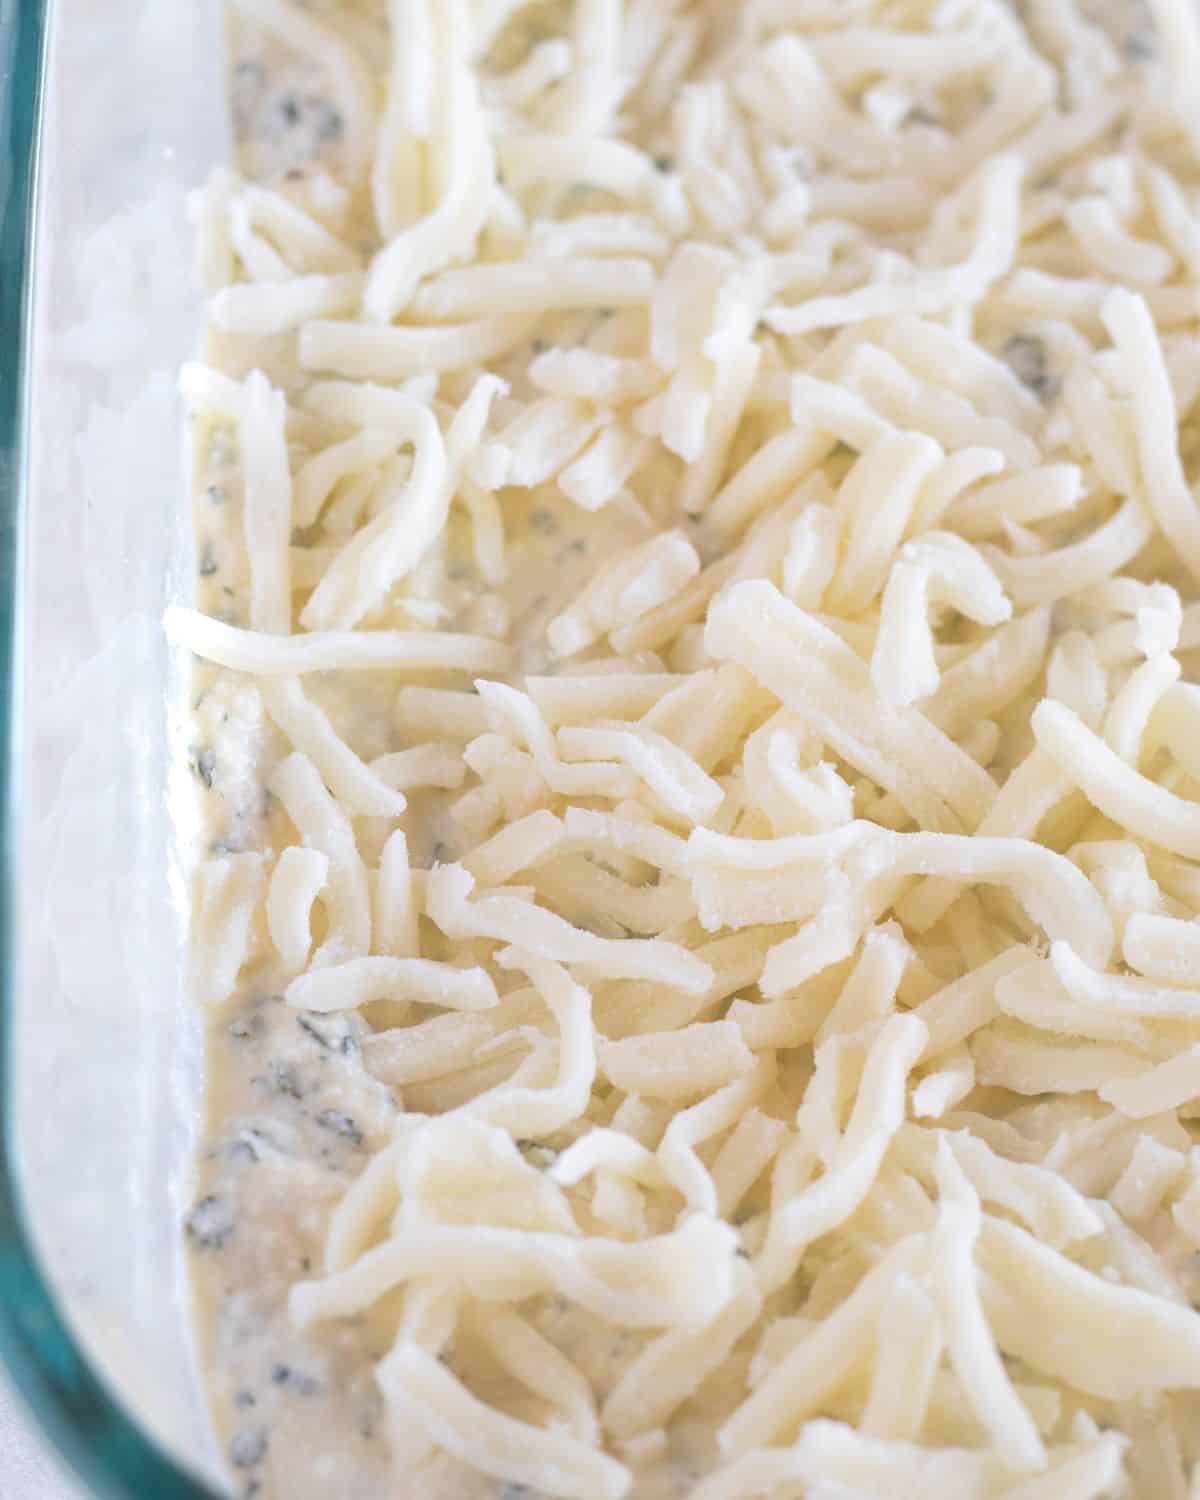 mozzarella cheese over the ricotta layer.